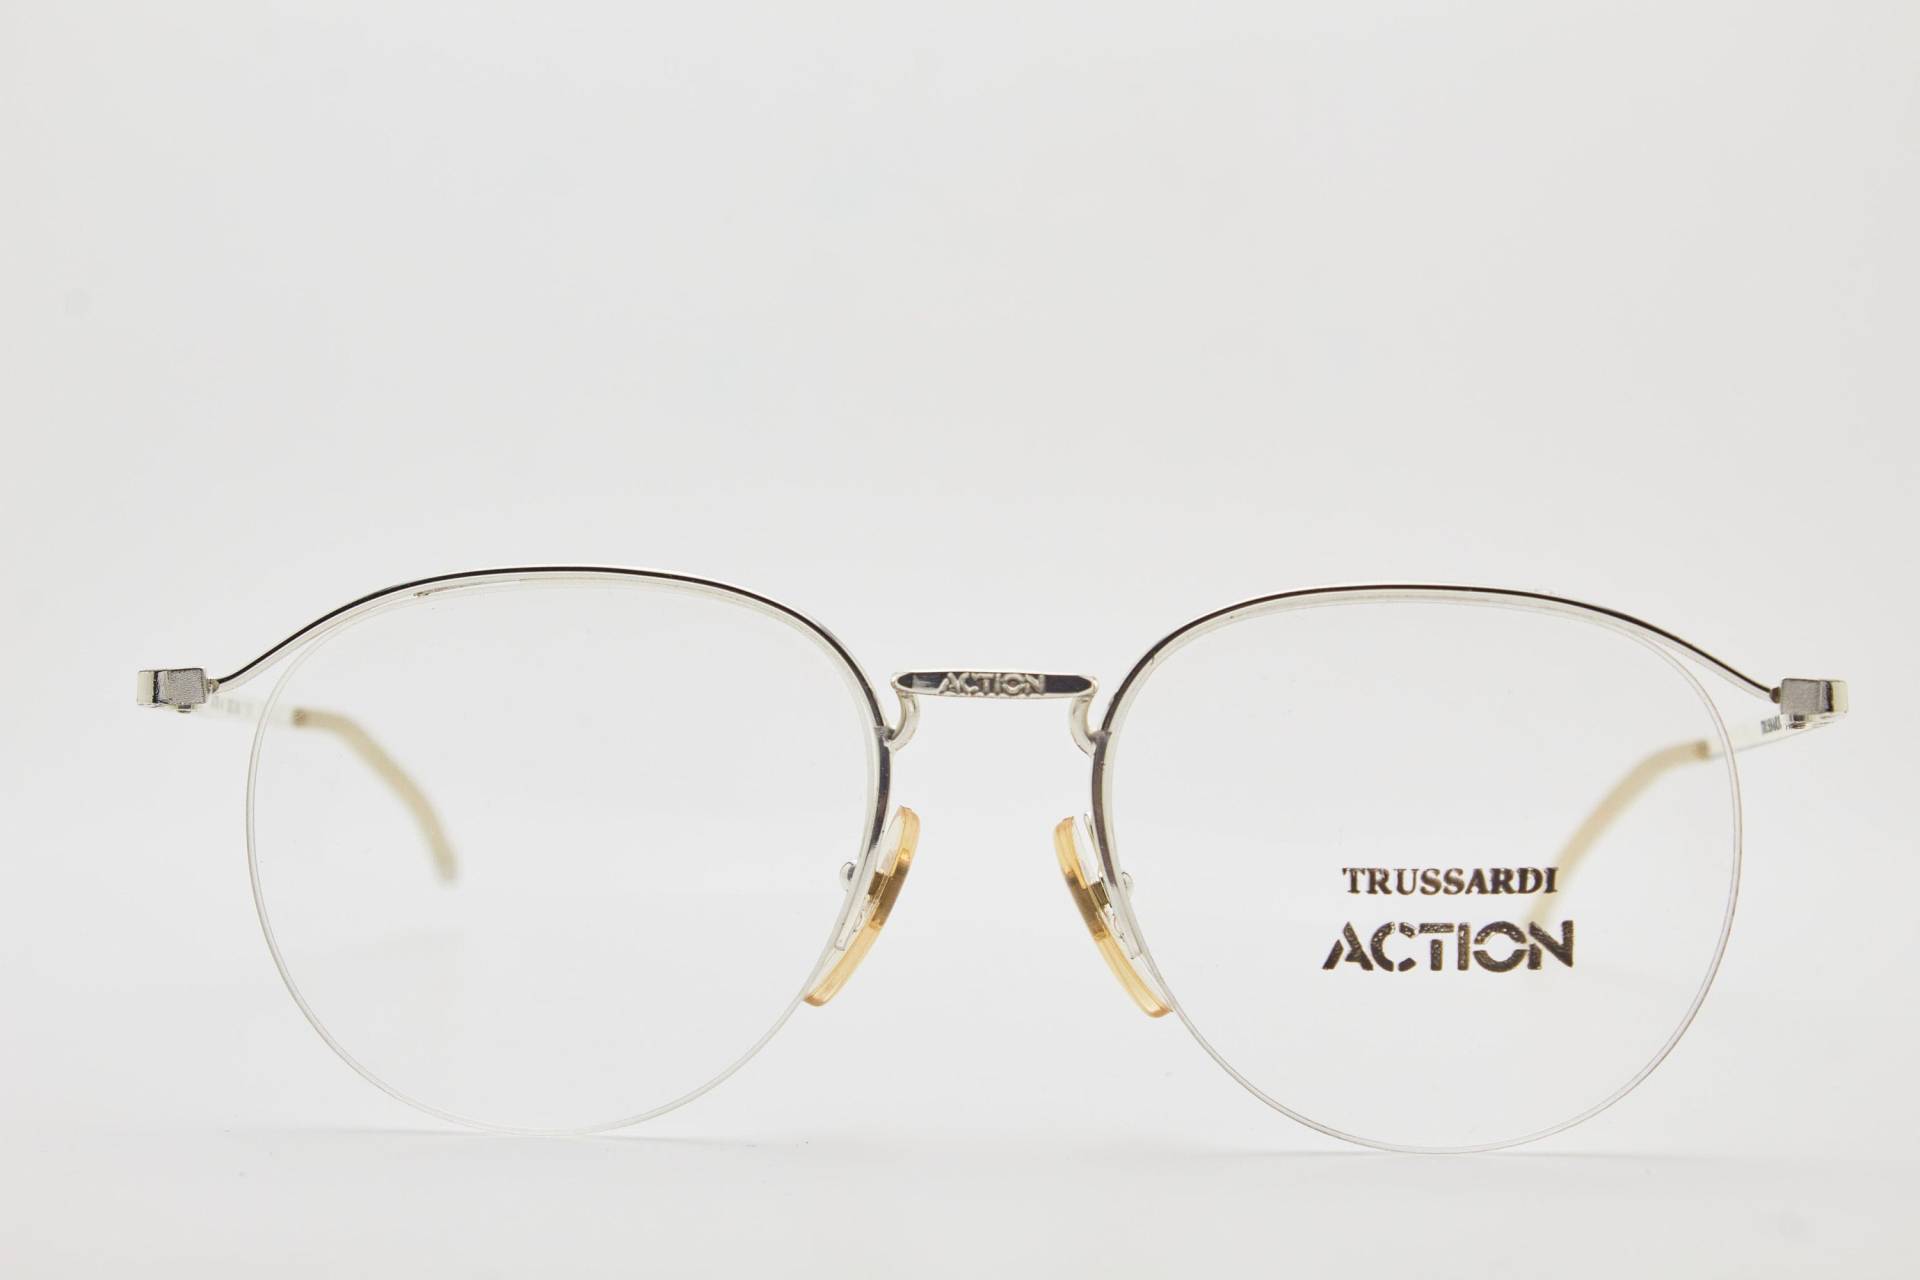 Runde Brille 1980Er Jahre Trussardi Action Atr4 Silver Frame/Hipster Brillen/Runde Brillen/Vintage Brillen/1980Er Sonnenbrillen/Runde Brillen von VintageGlassesVault